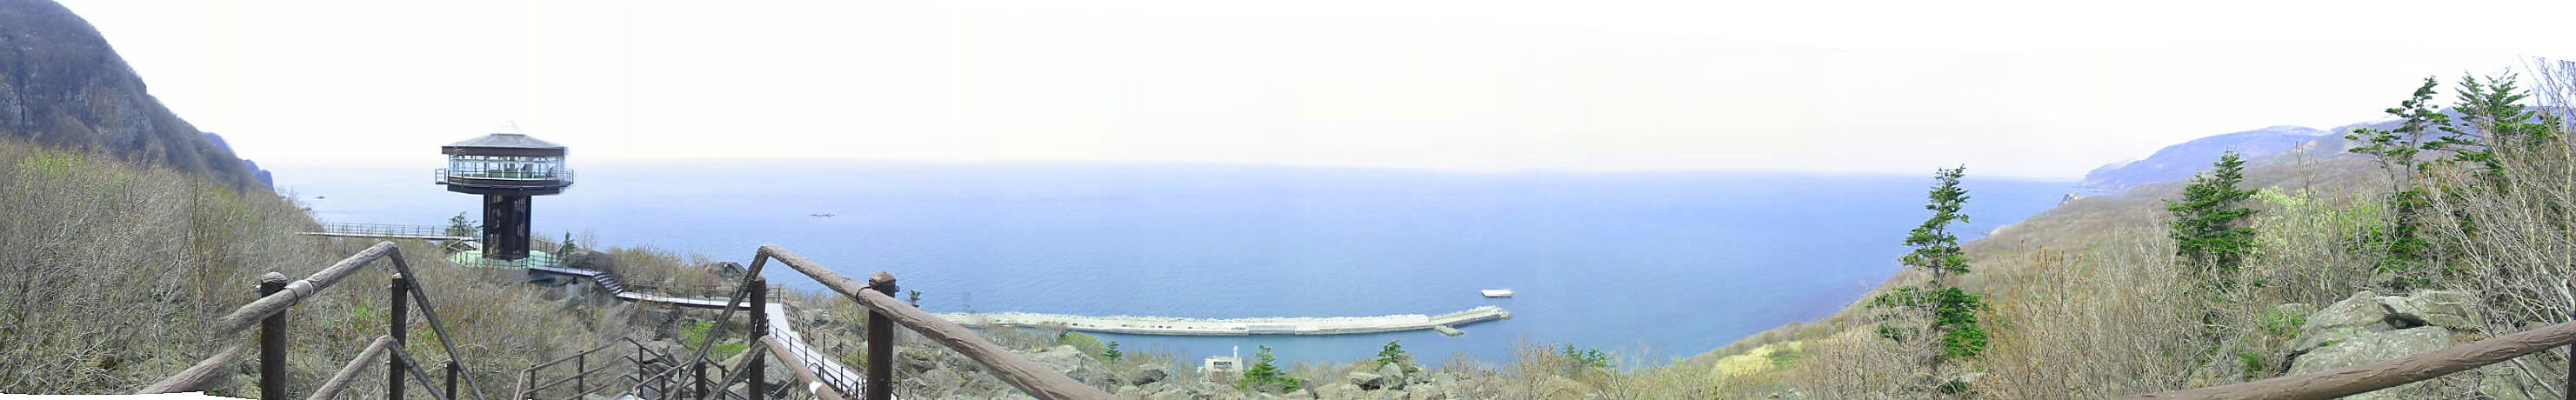 雄冬岬展望台からのパノラマ画像